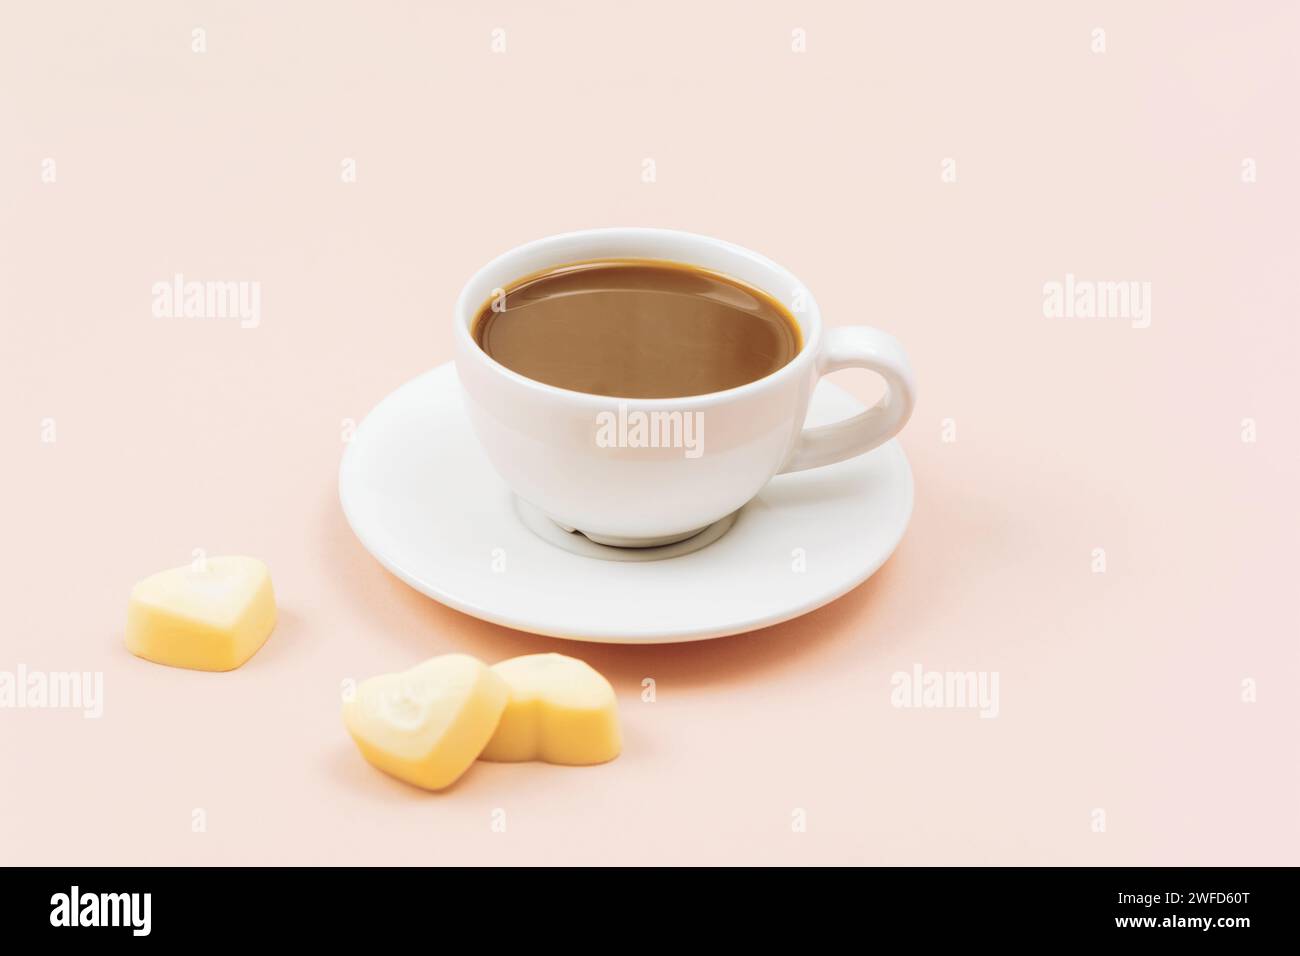 Café en taza blanca y caramelos de chocolate blanco en forma de corazón sobre fondo rosa claro. Concepto del día de San Valentín. En primer plano. Foto de stock